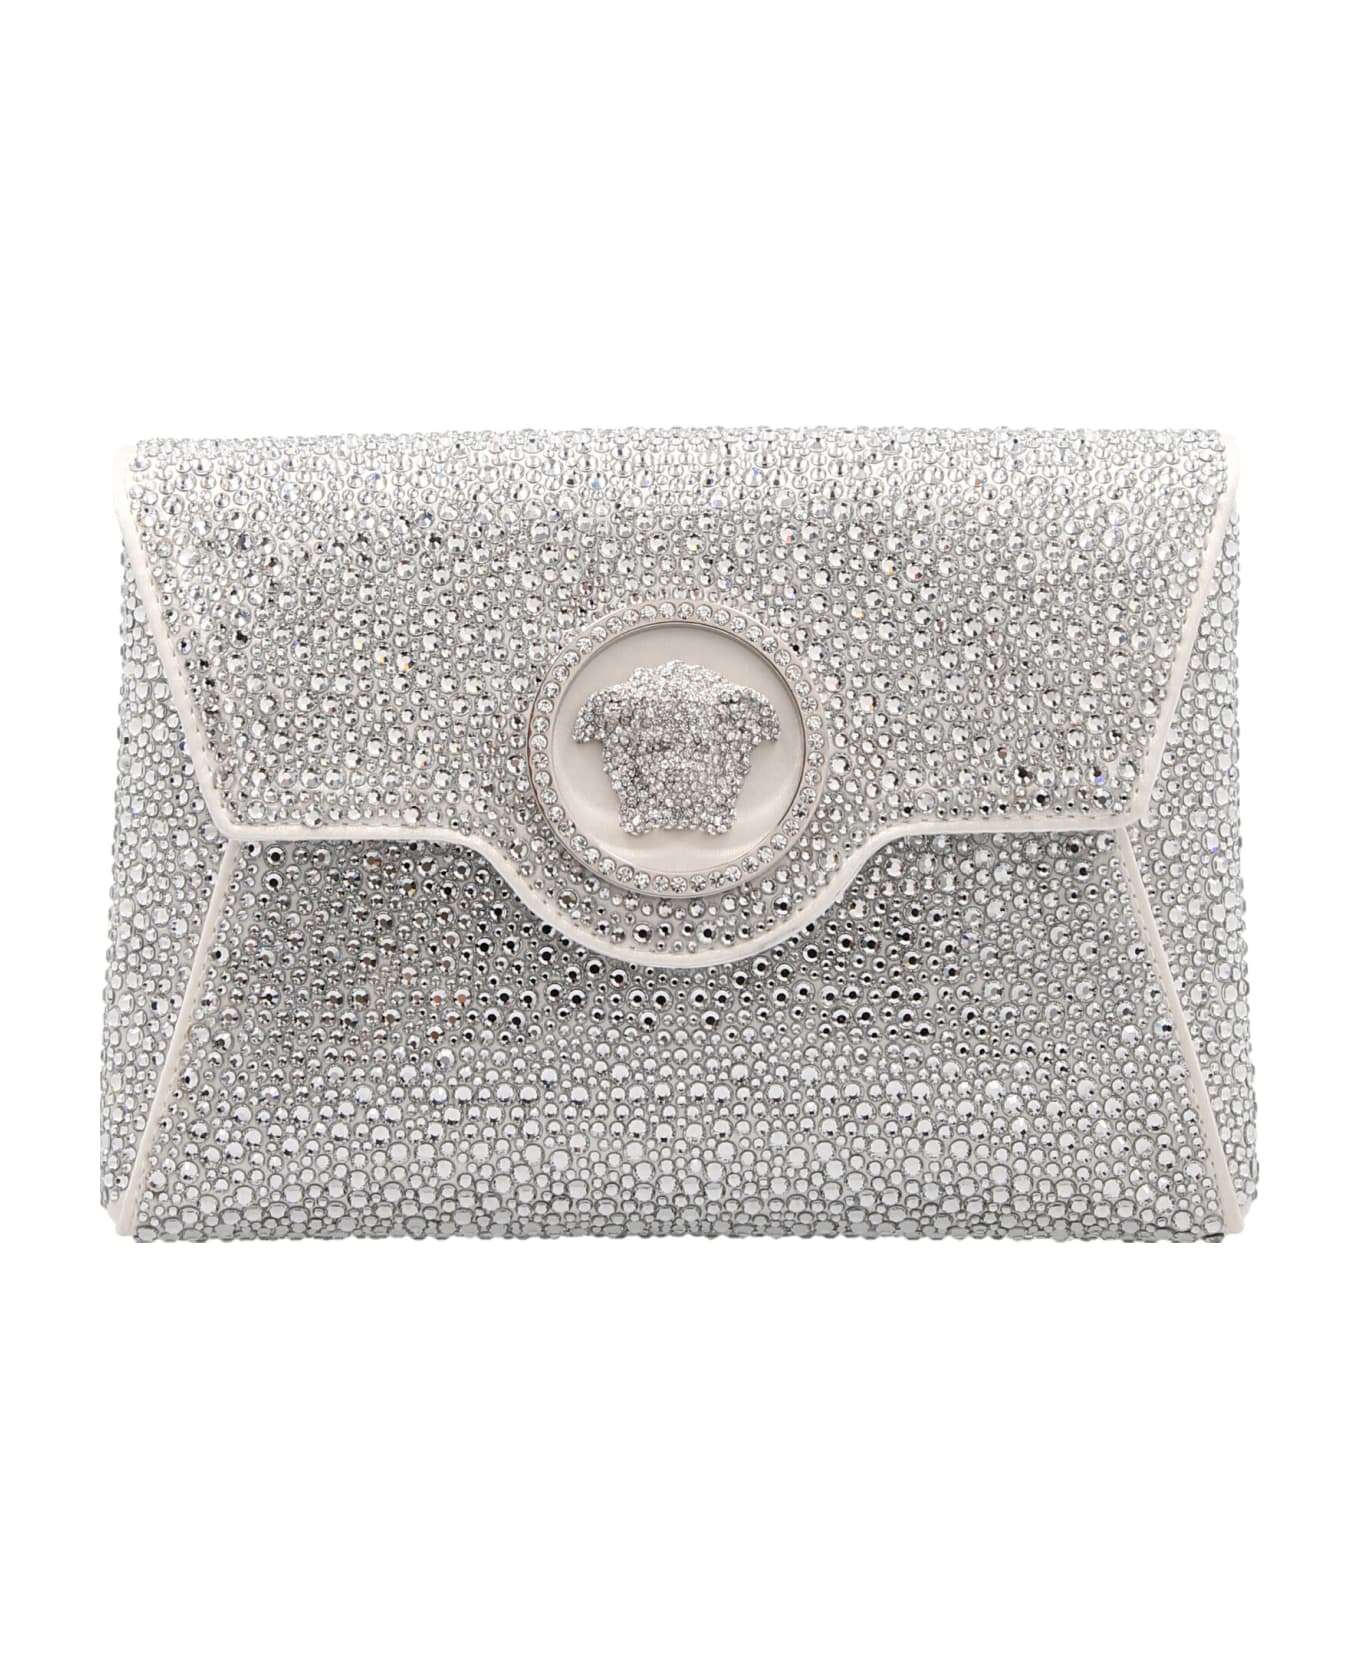 Versace 'la Medusa' Clutch Bag - White